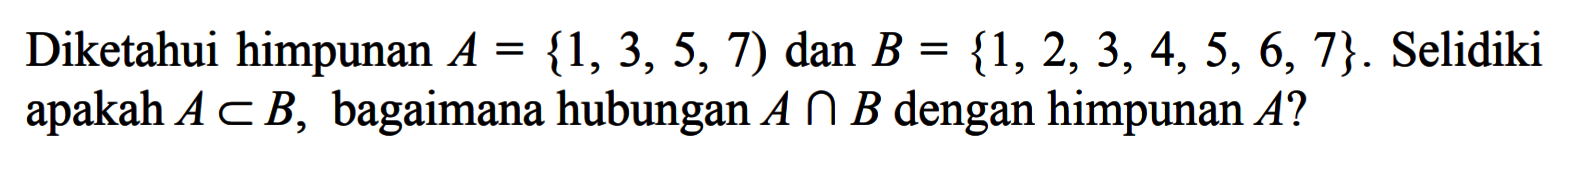 Diketahui himpunan A = {1, 3, 5, 7) dan B = {1, 2, 3, 4, 5, 6, 7} . Selidiki apakah A c B, bagaimana hubungan A n B dengan himpunan A?